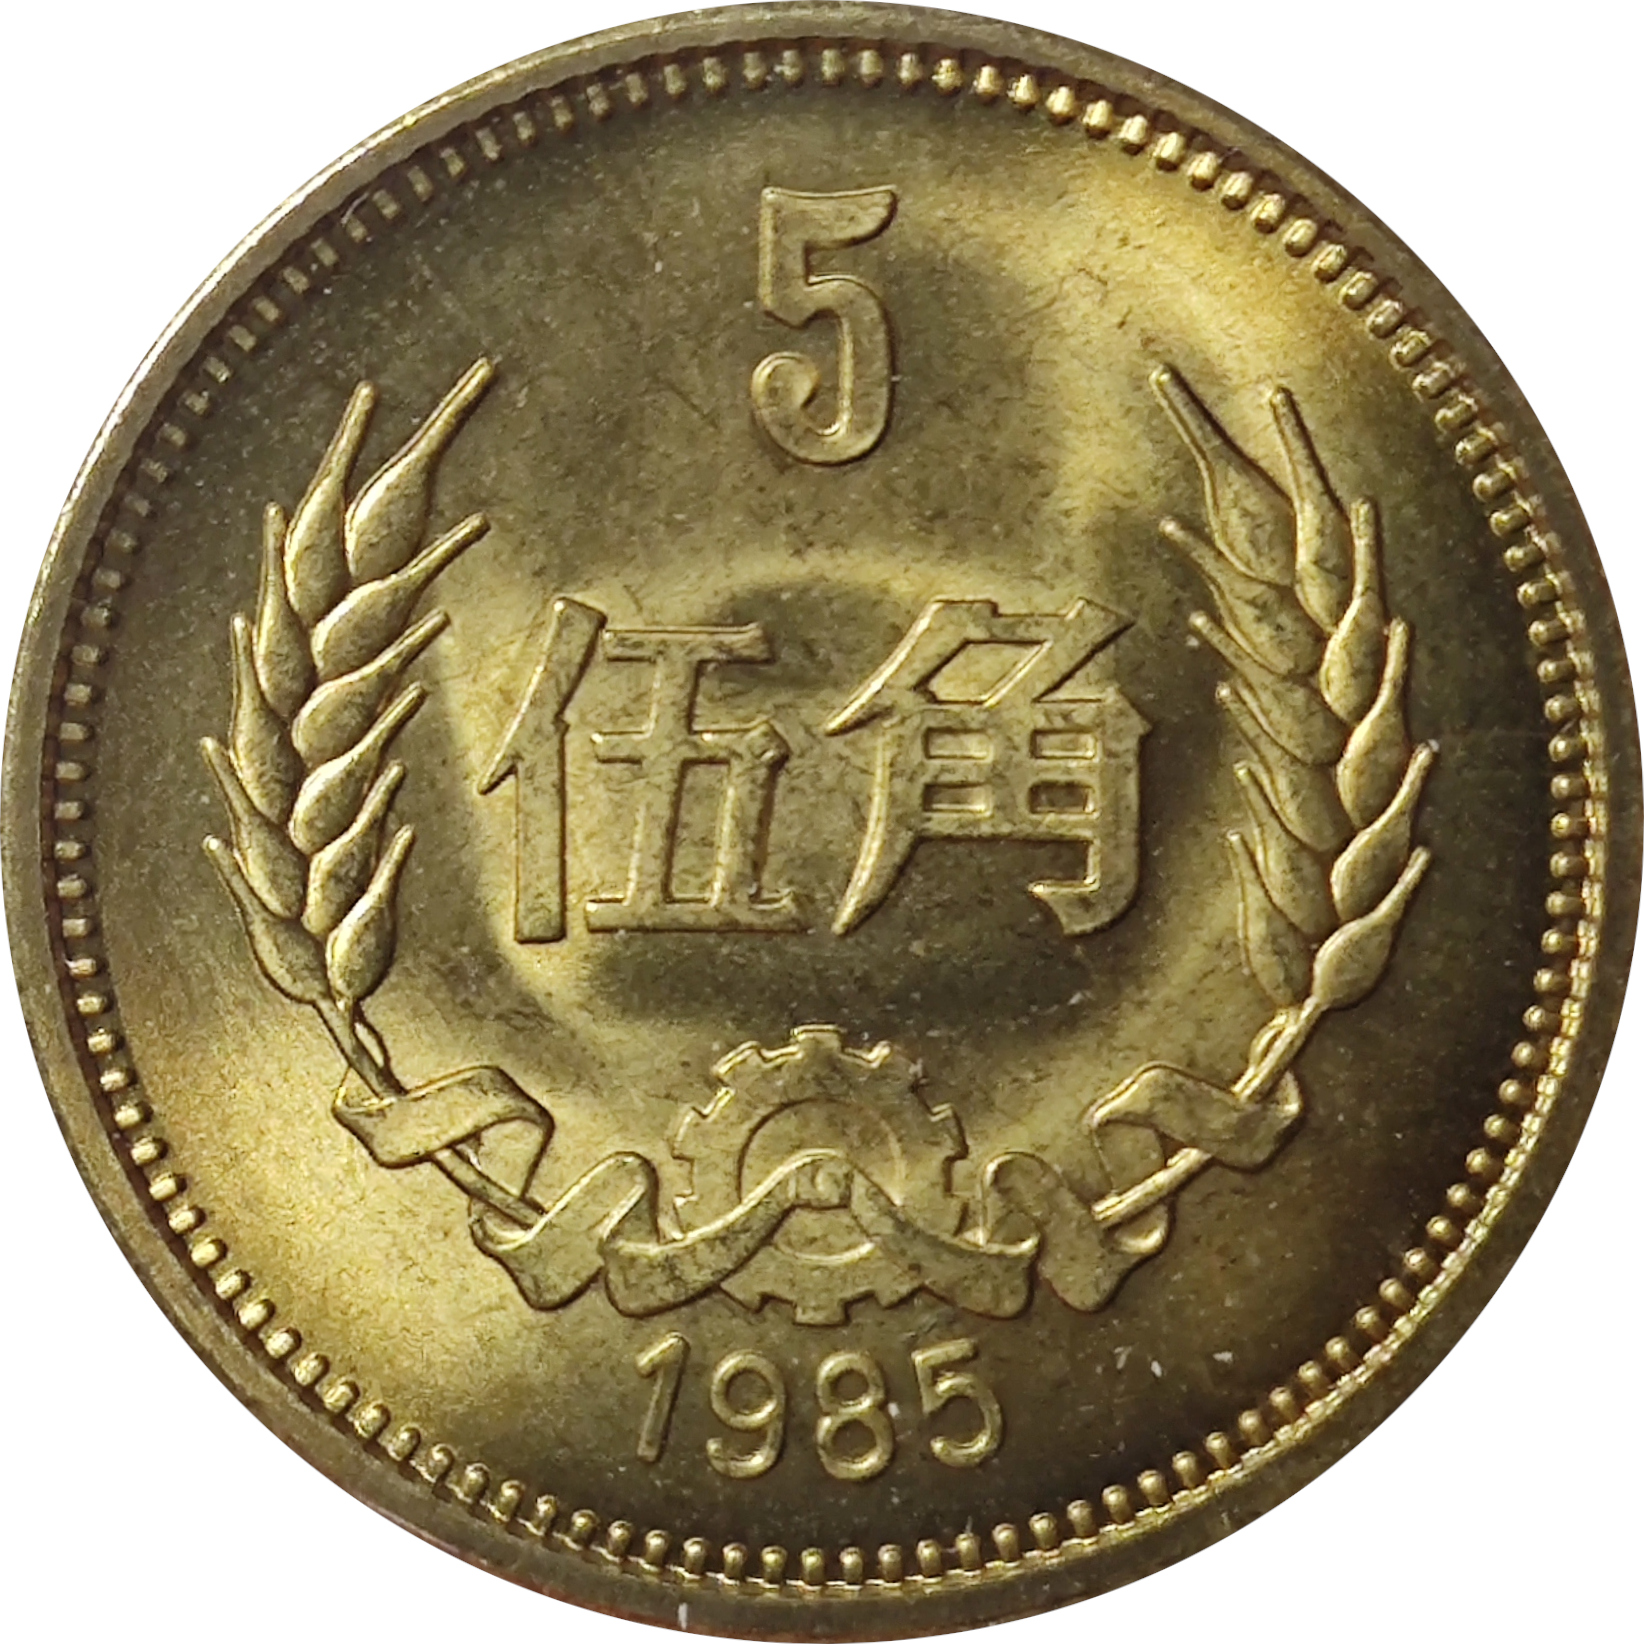 5 jiao - Emblème national